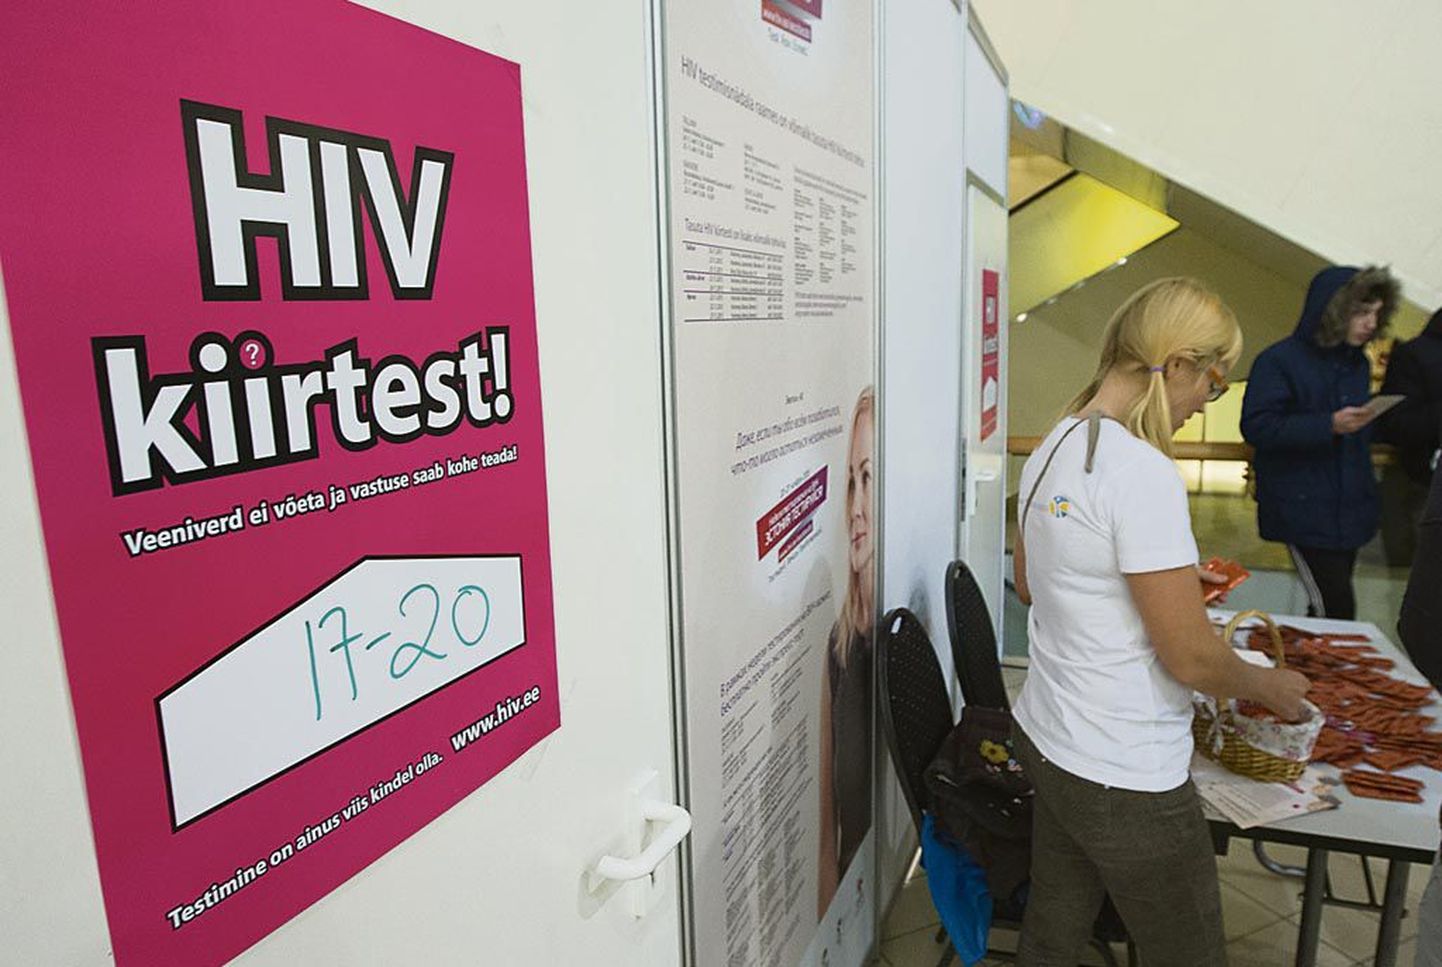 Möödunud reedel Pärnus HIV-kiirtesti tegemas käinud 45 inimesest osutus üks viirusekandjaks.